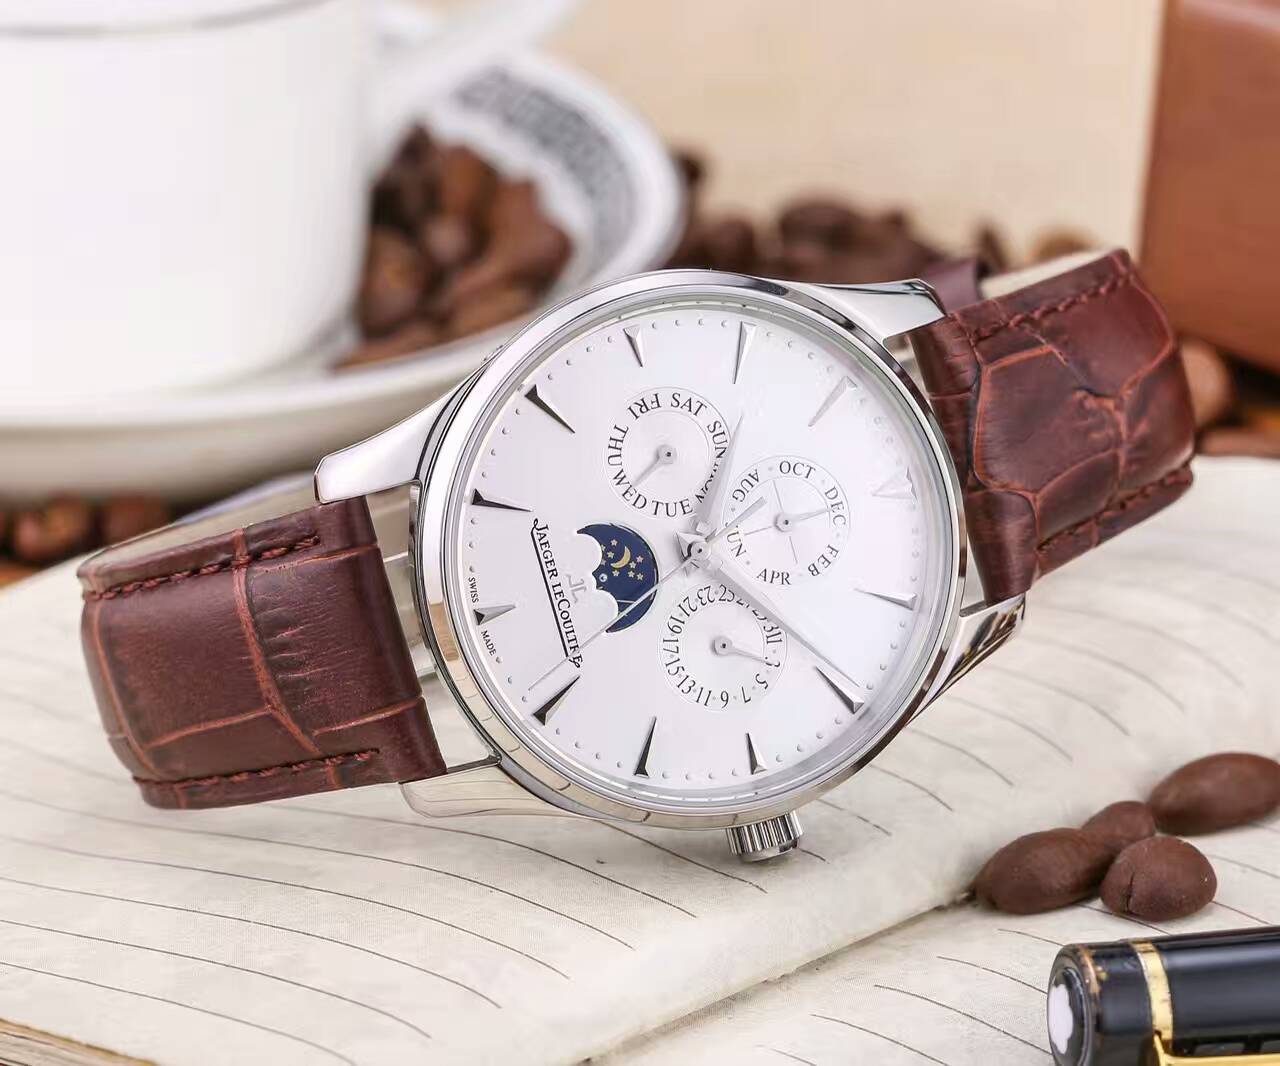 積家 頂級機械機芯 真牛皮錶帶 精湛品質 尊貴高雅 精品男士腕錶